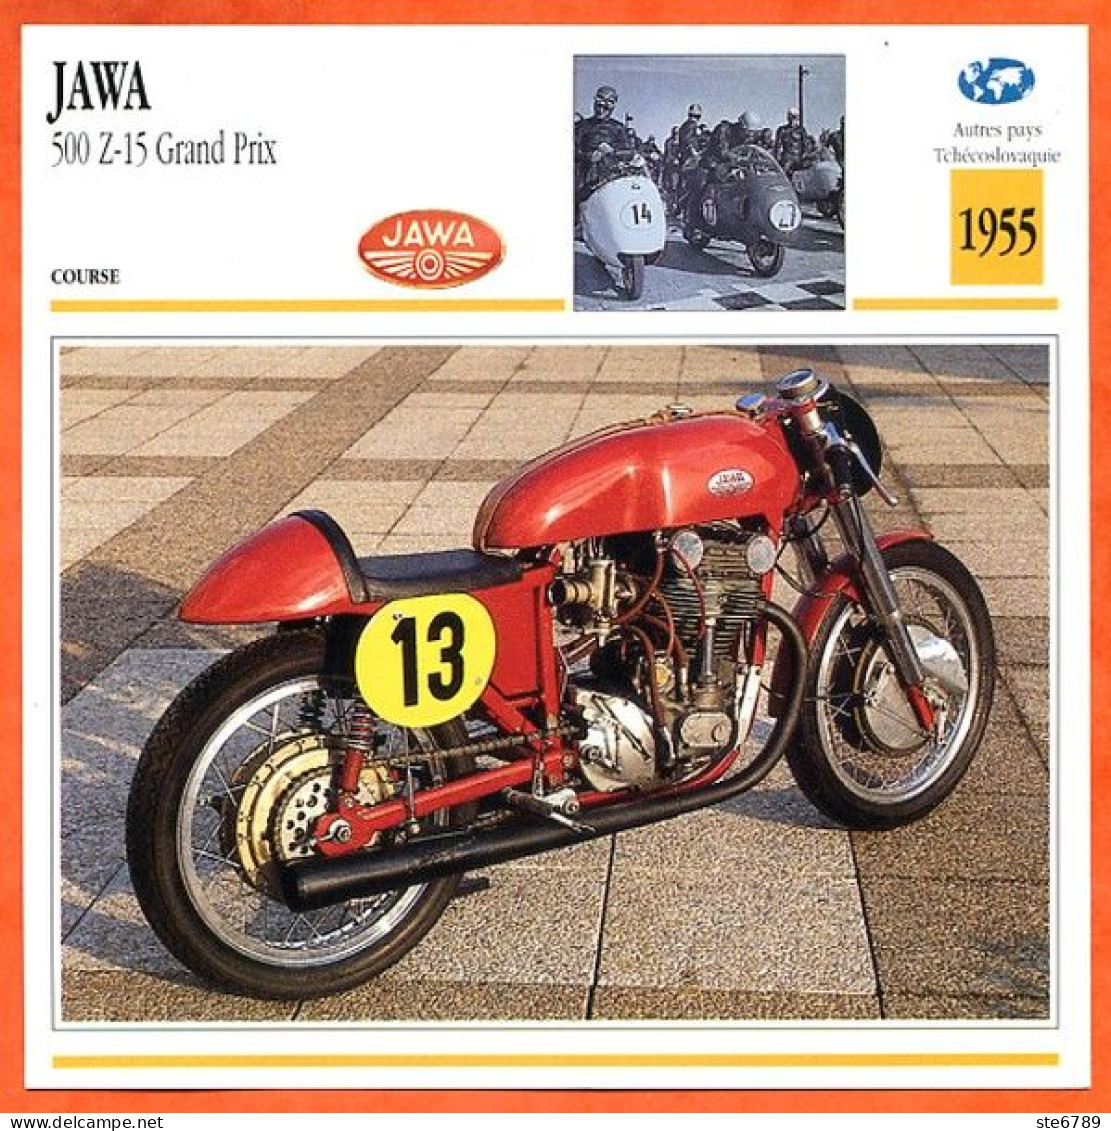 JAWA 500 Z-15 Gd Prix 1955 Tchécoslovaquie Fiche Technique Moto - Sport